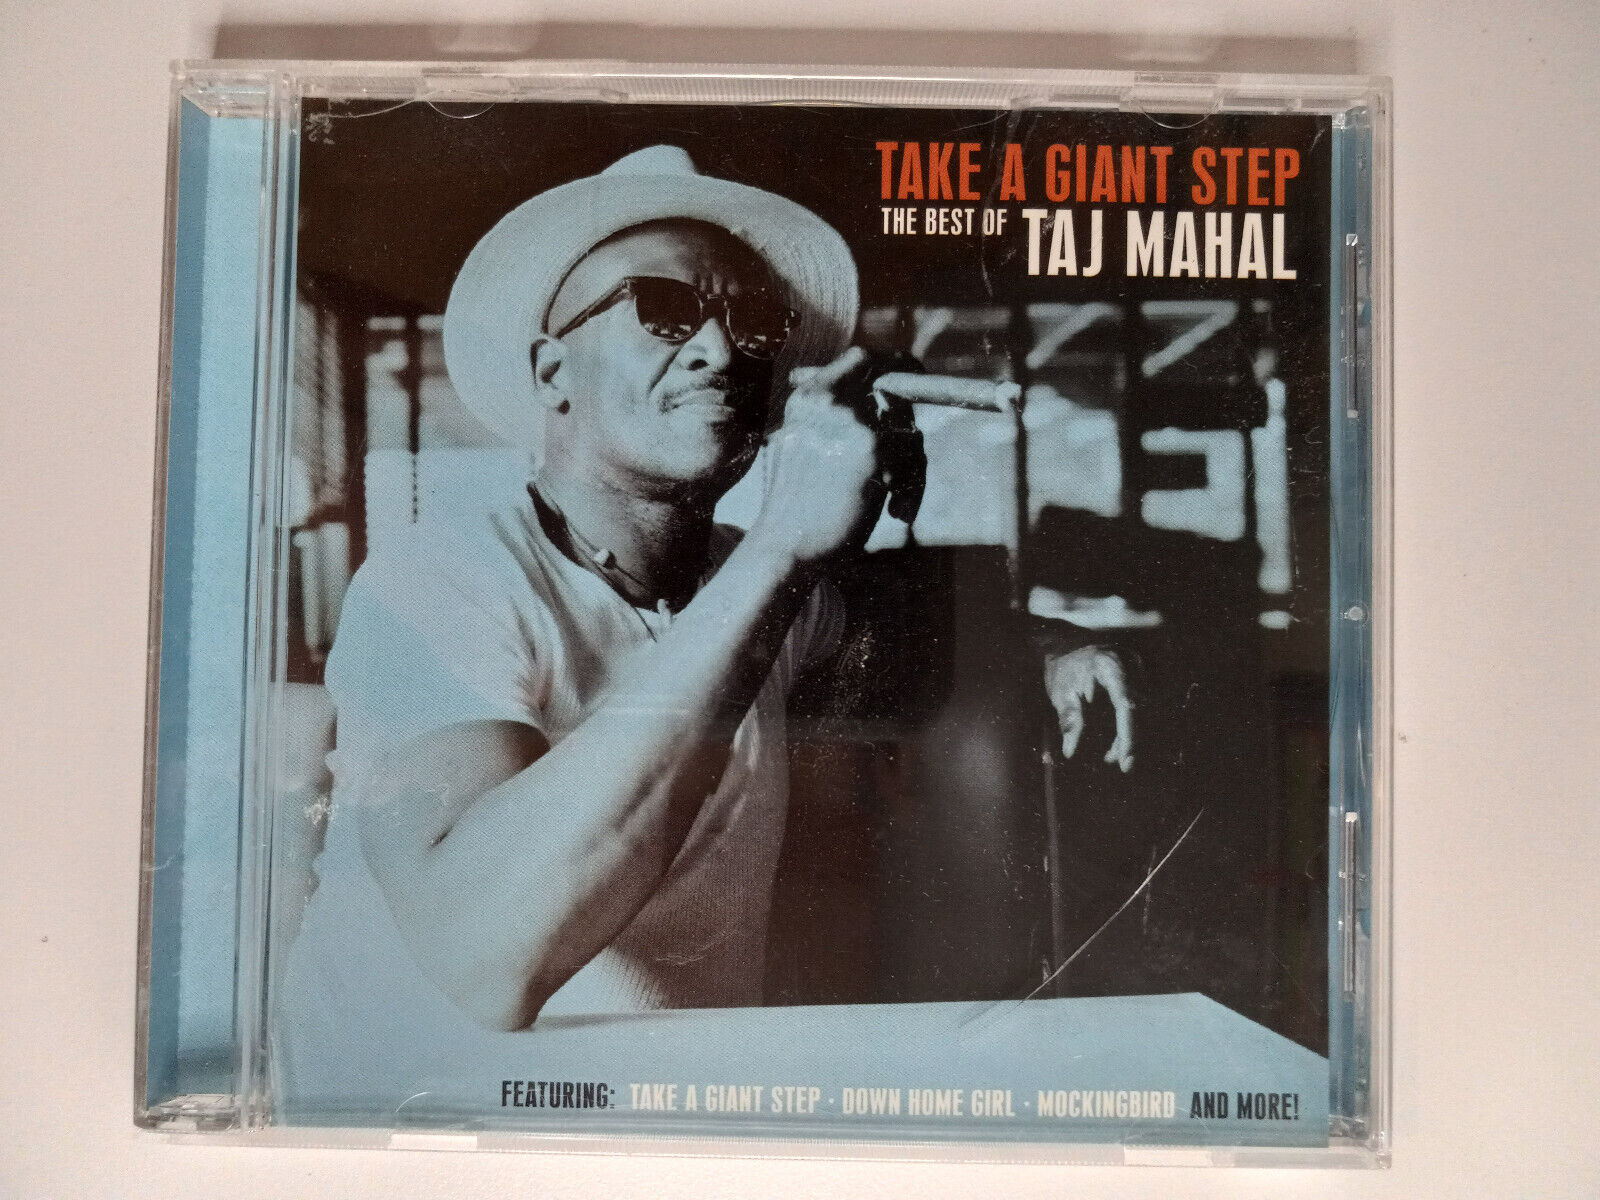 Taj Mahal - Take A Giant Step: The Best Of Taj Mahal (CD, 2004) BMG